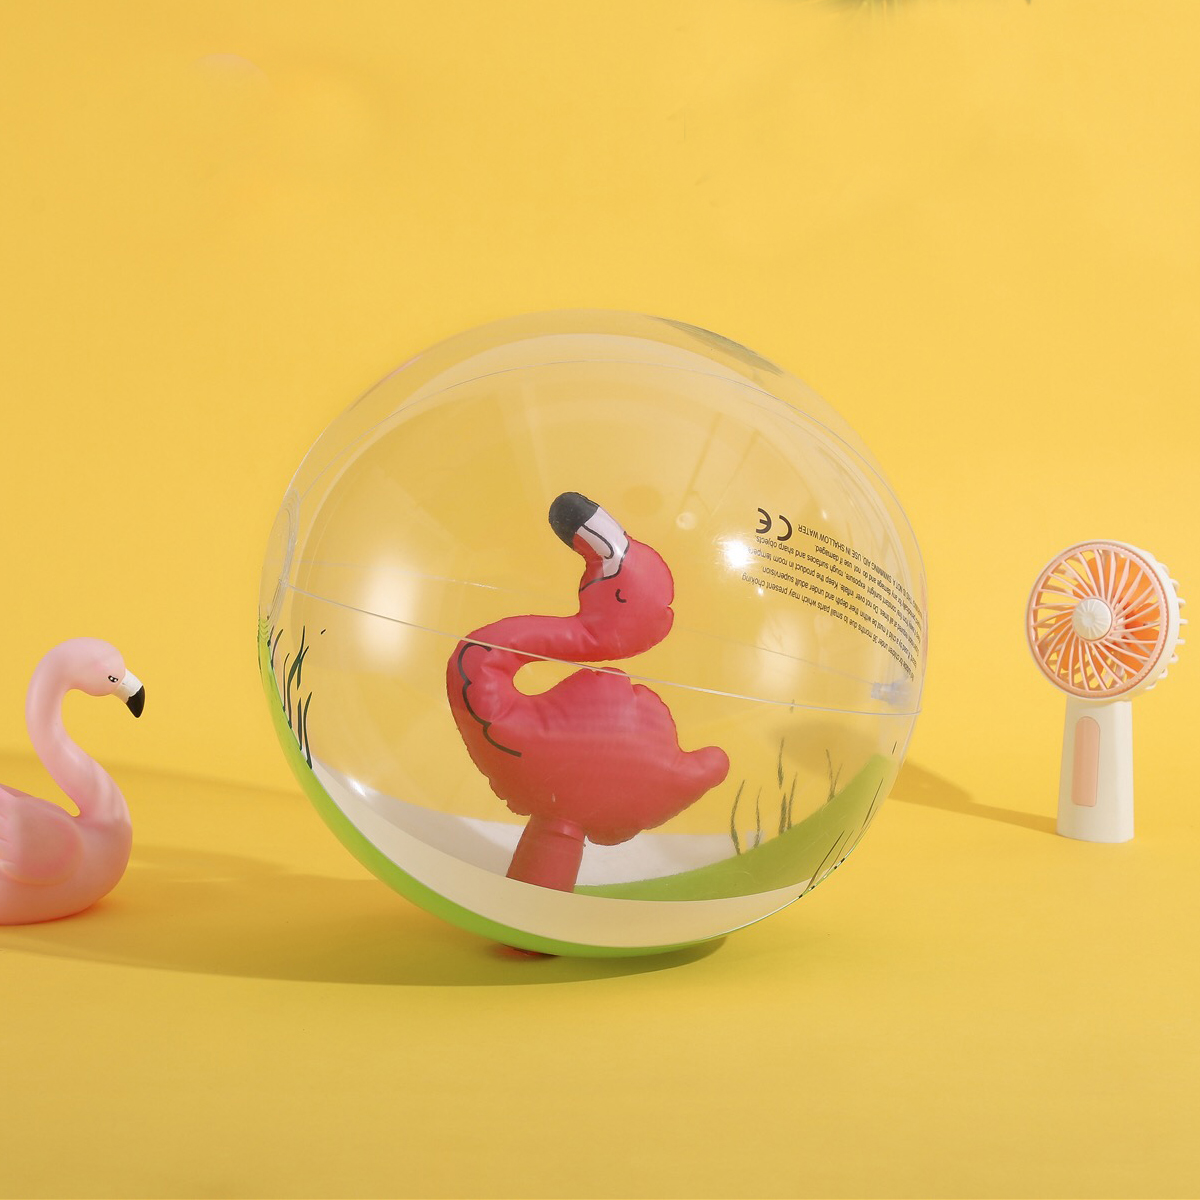 创意独角兽充气沙滩球婴儿戏水球水上亮片塑料玩具球拍照布置道具 - 图1